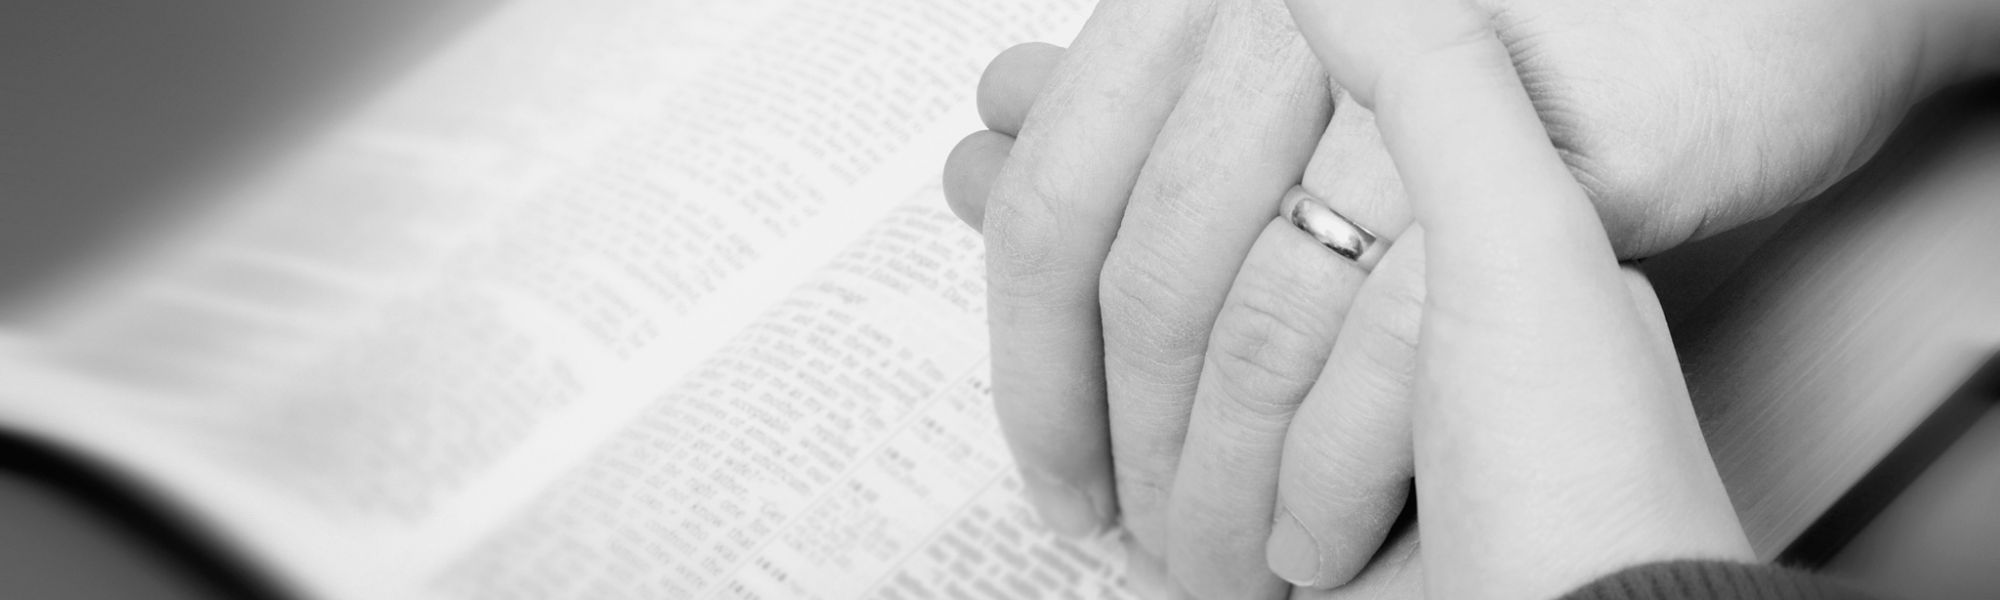 Bendiciones bíblicas para los esposos